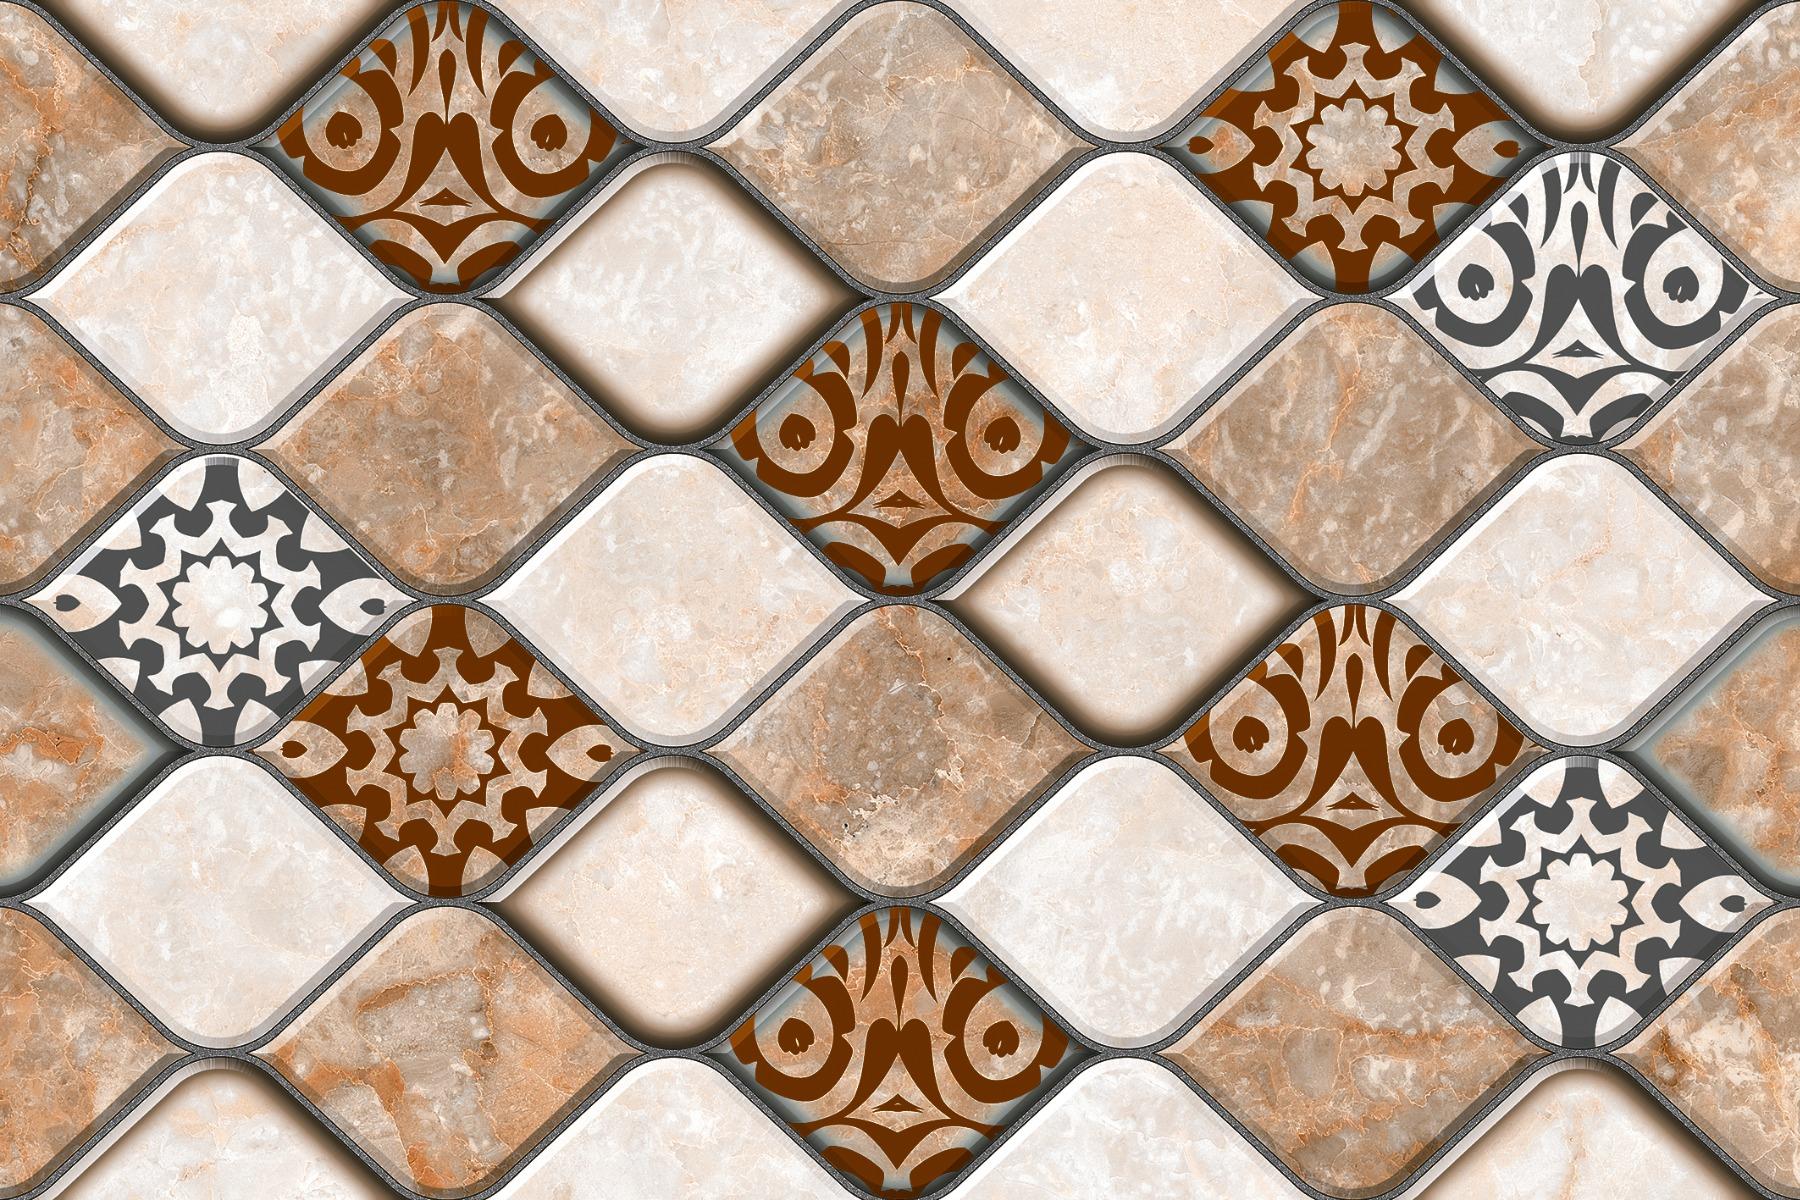 Bottochino Tiles for Bathroom Tiles, Living Room Tiles, Kitchen Tiles, Bedroom Tiles, Balcony Tiles